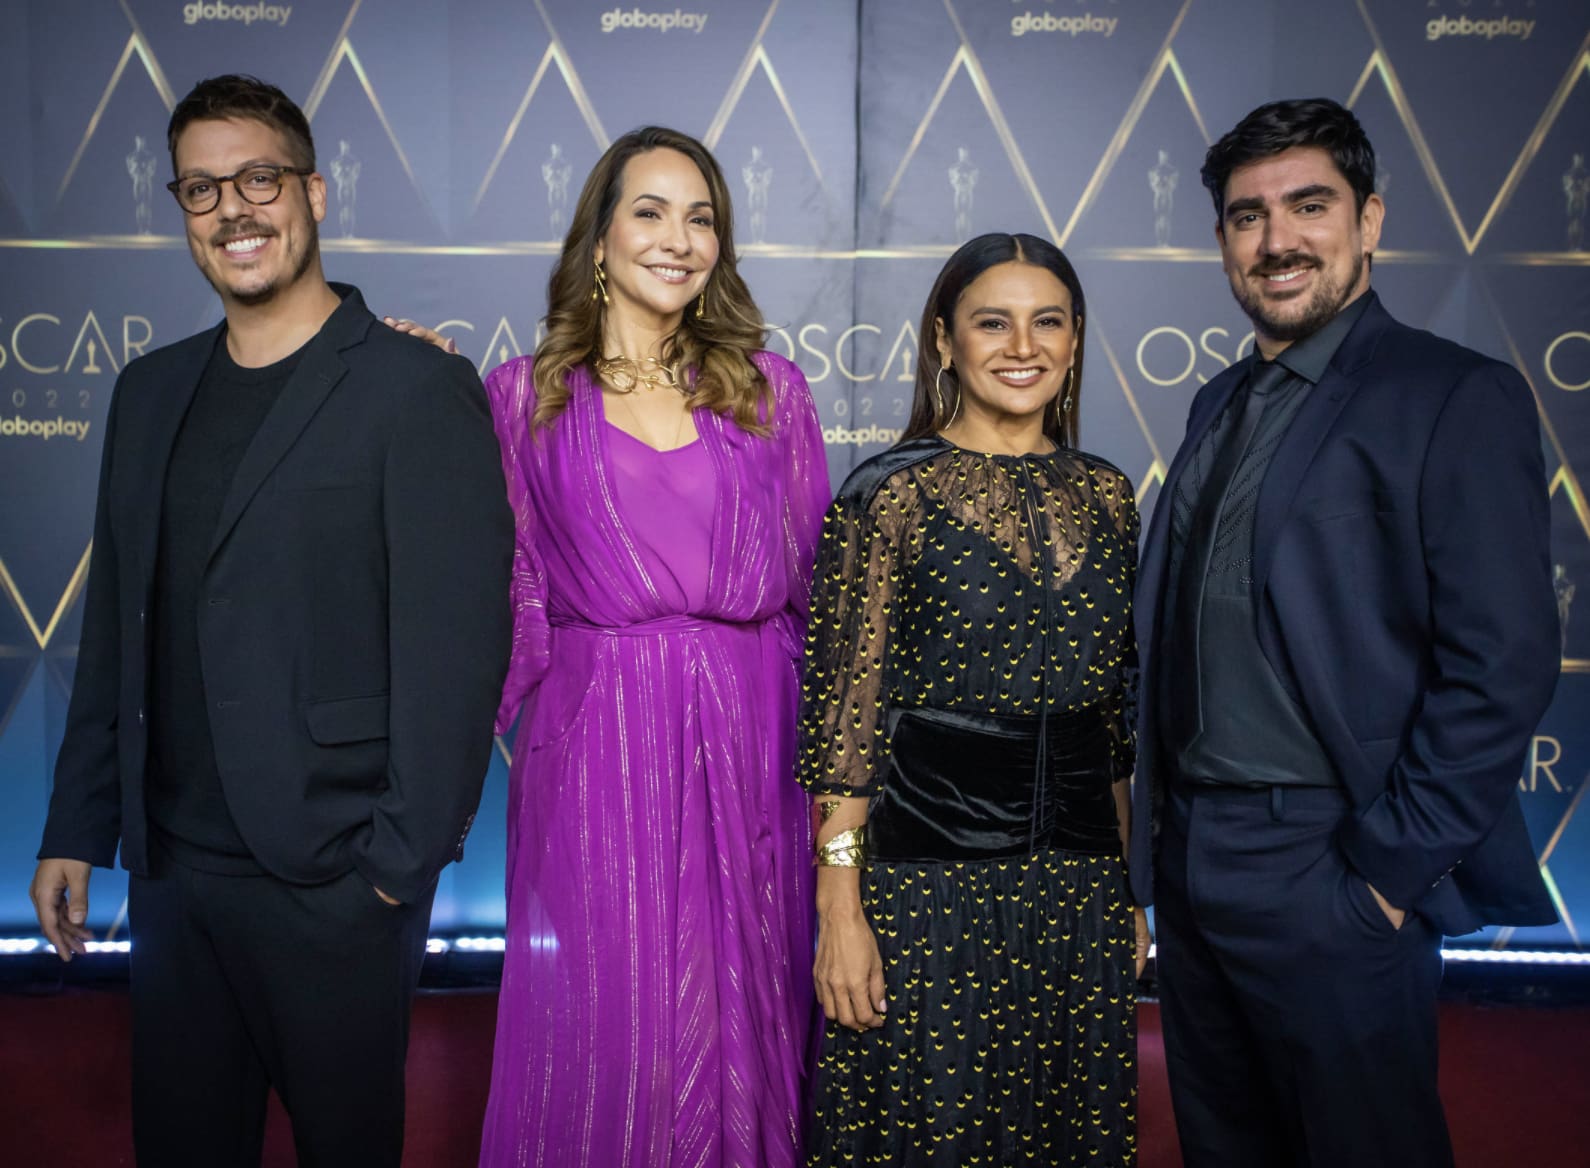 Fábio Porchat, Maria Beltrão, Dira Paes e Marcelo Adnet comandaram a transmissão do Oscar no Globoplay